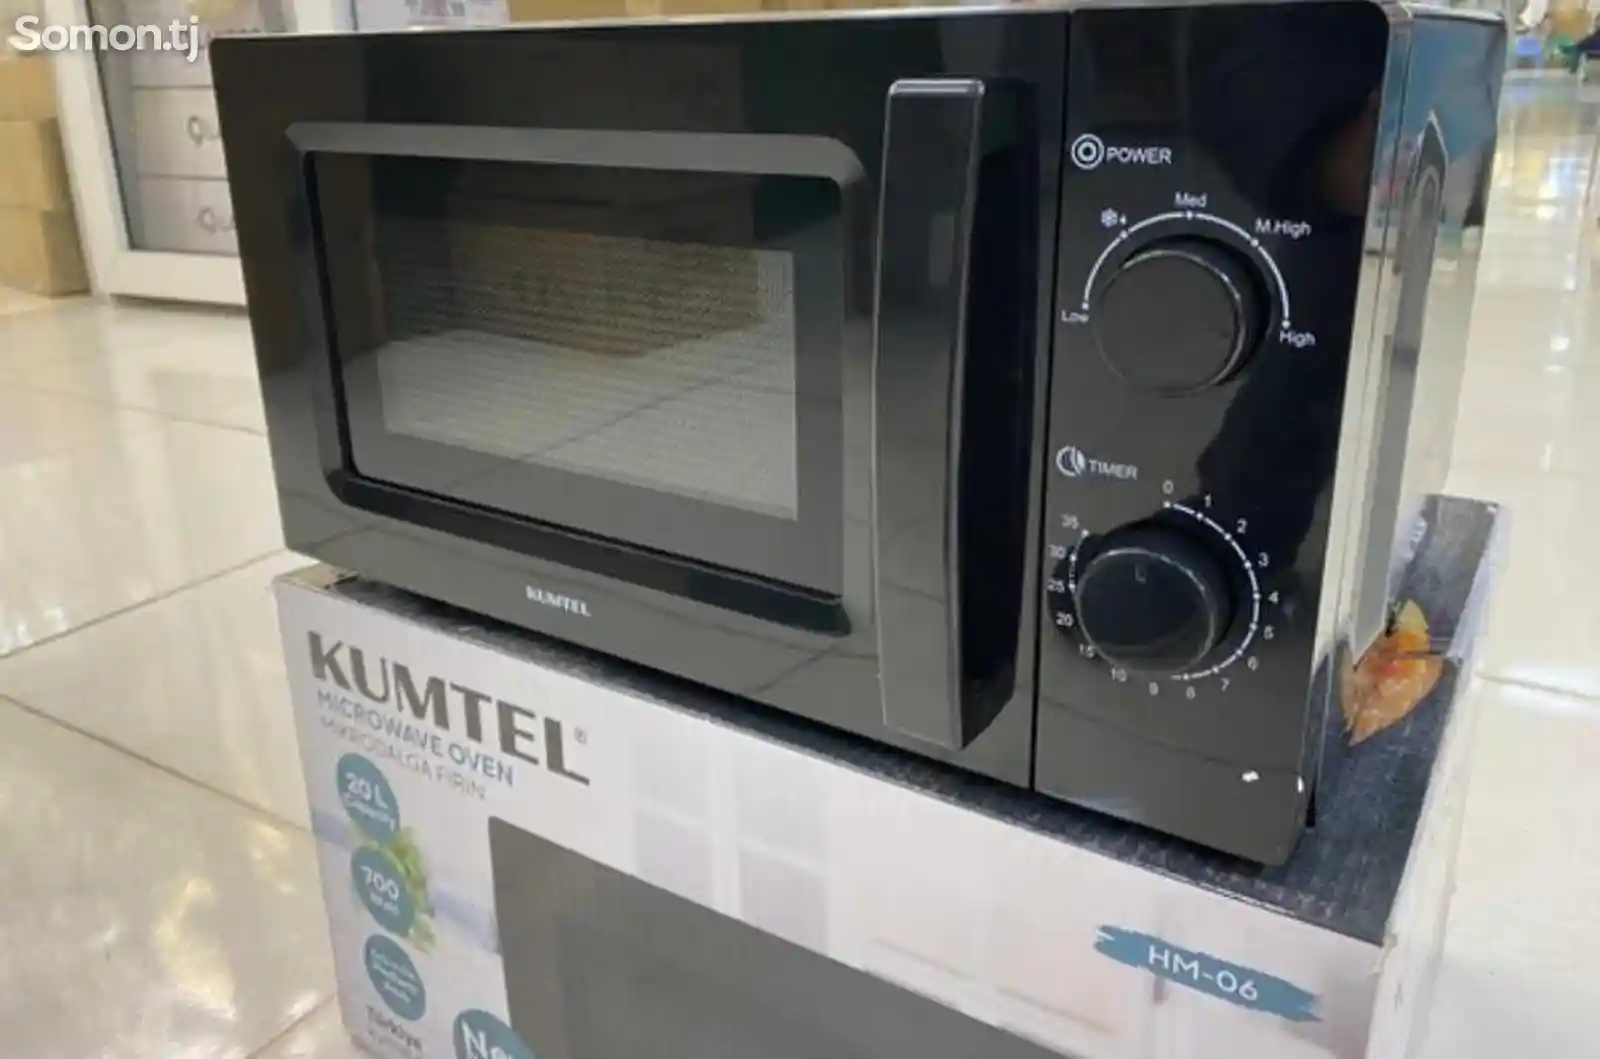 Микроволновая печь Kumtel